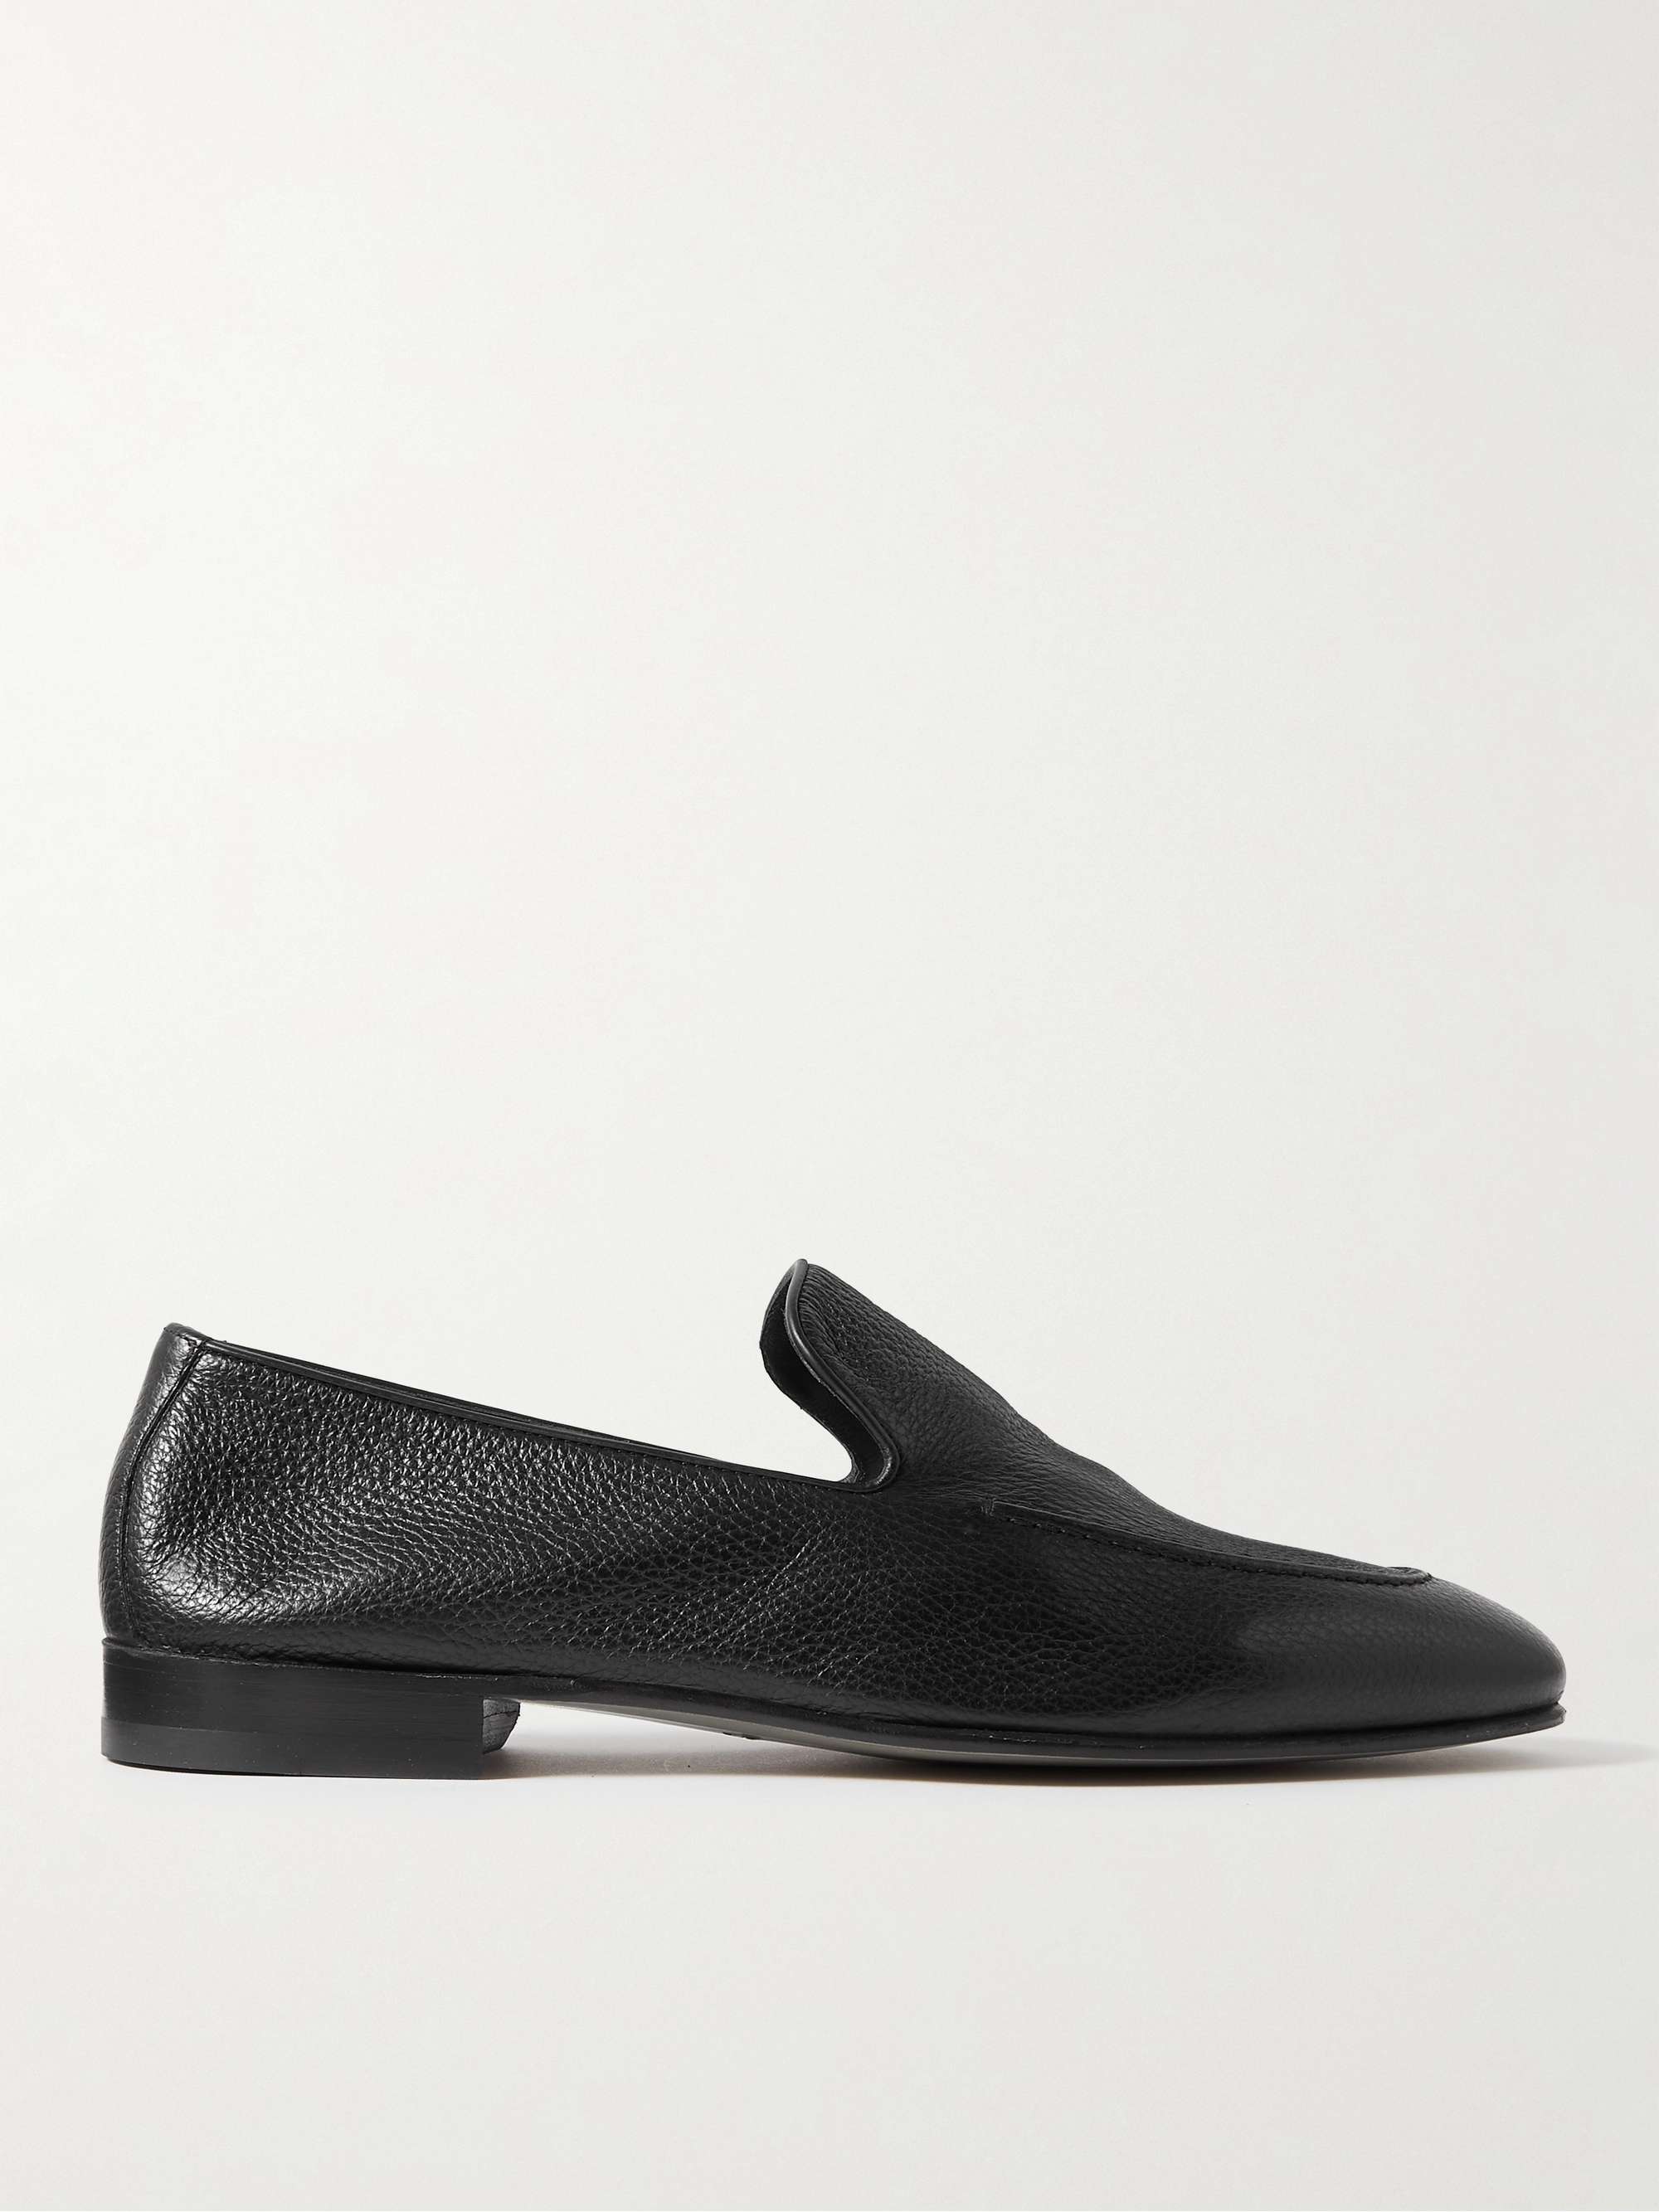 أسود حذاء لوفر Truro من الجلد المحبب بالكامل | MANOLO BLAHNIK | MR PORTER